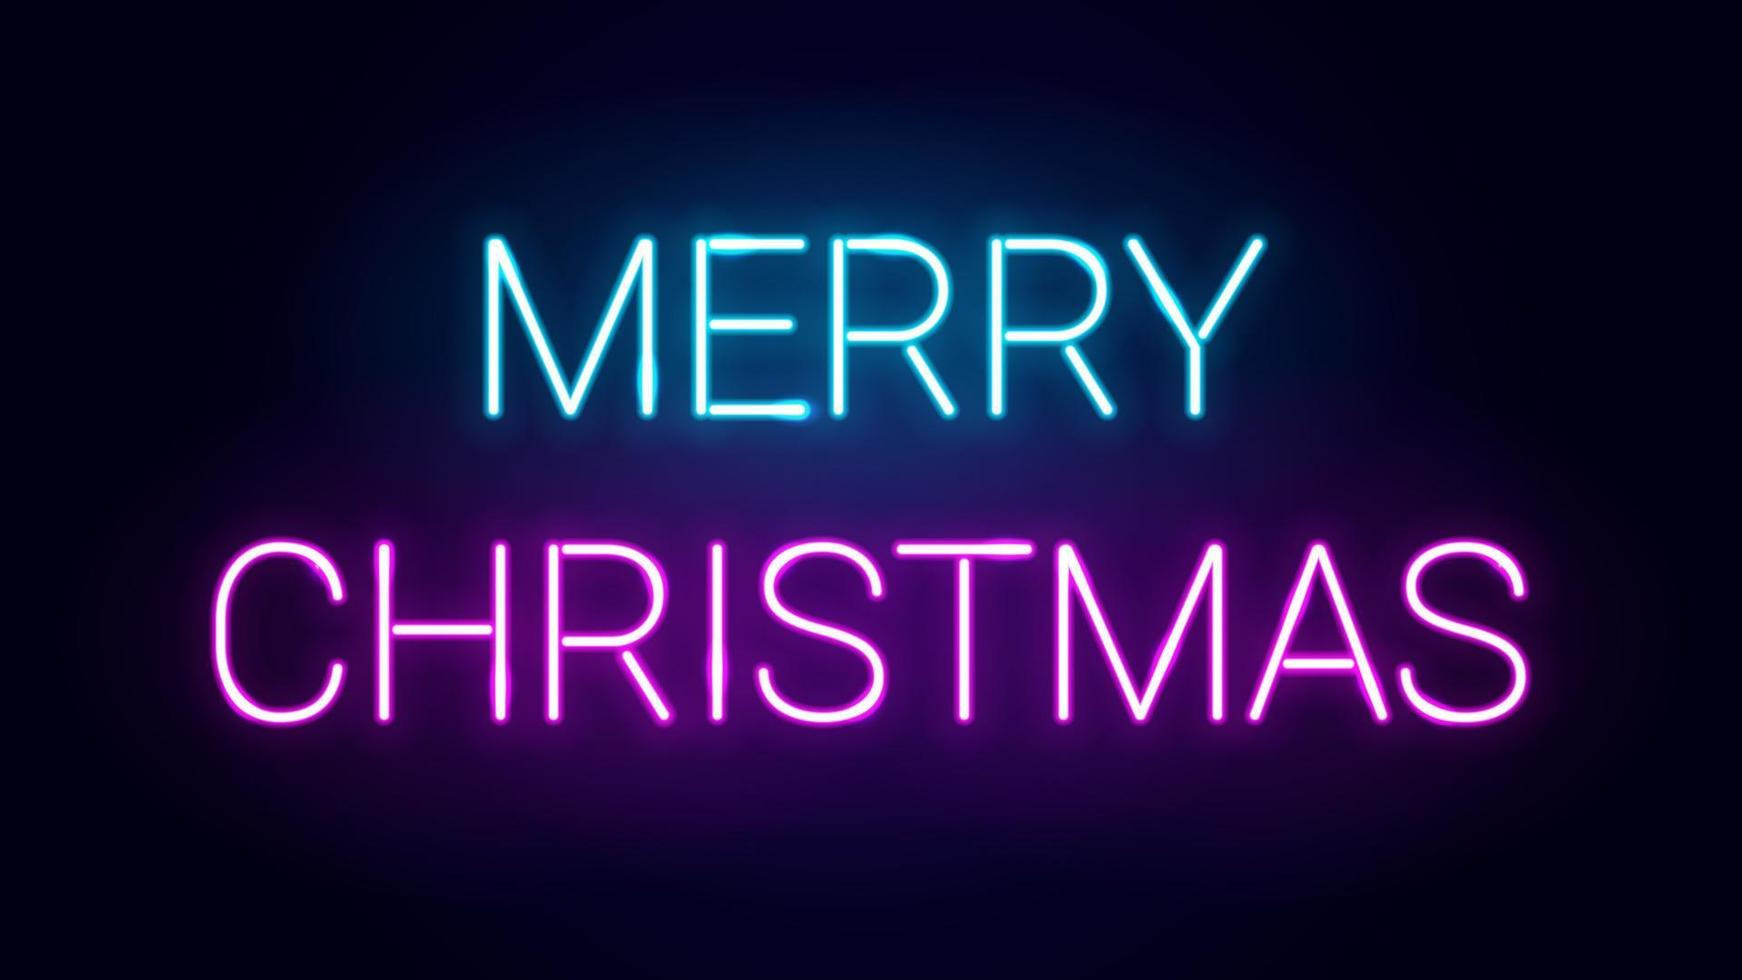 modelo de vetor de feliz natal brilhante design de tipografia de néon na cor azul e rosa, celebração do feriado levou sinal de texto de luz decorativa.